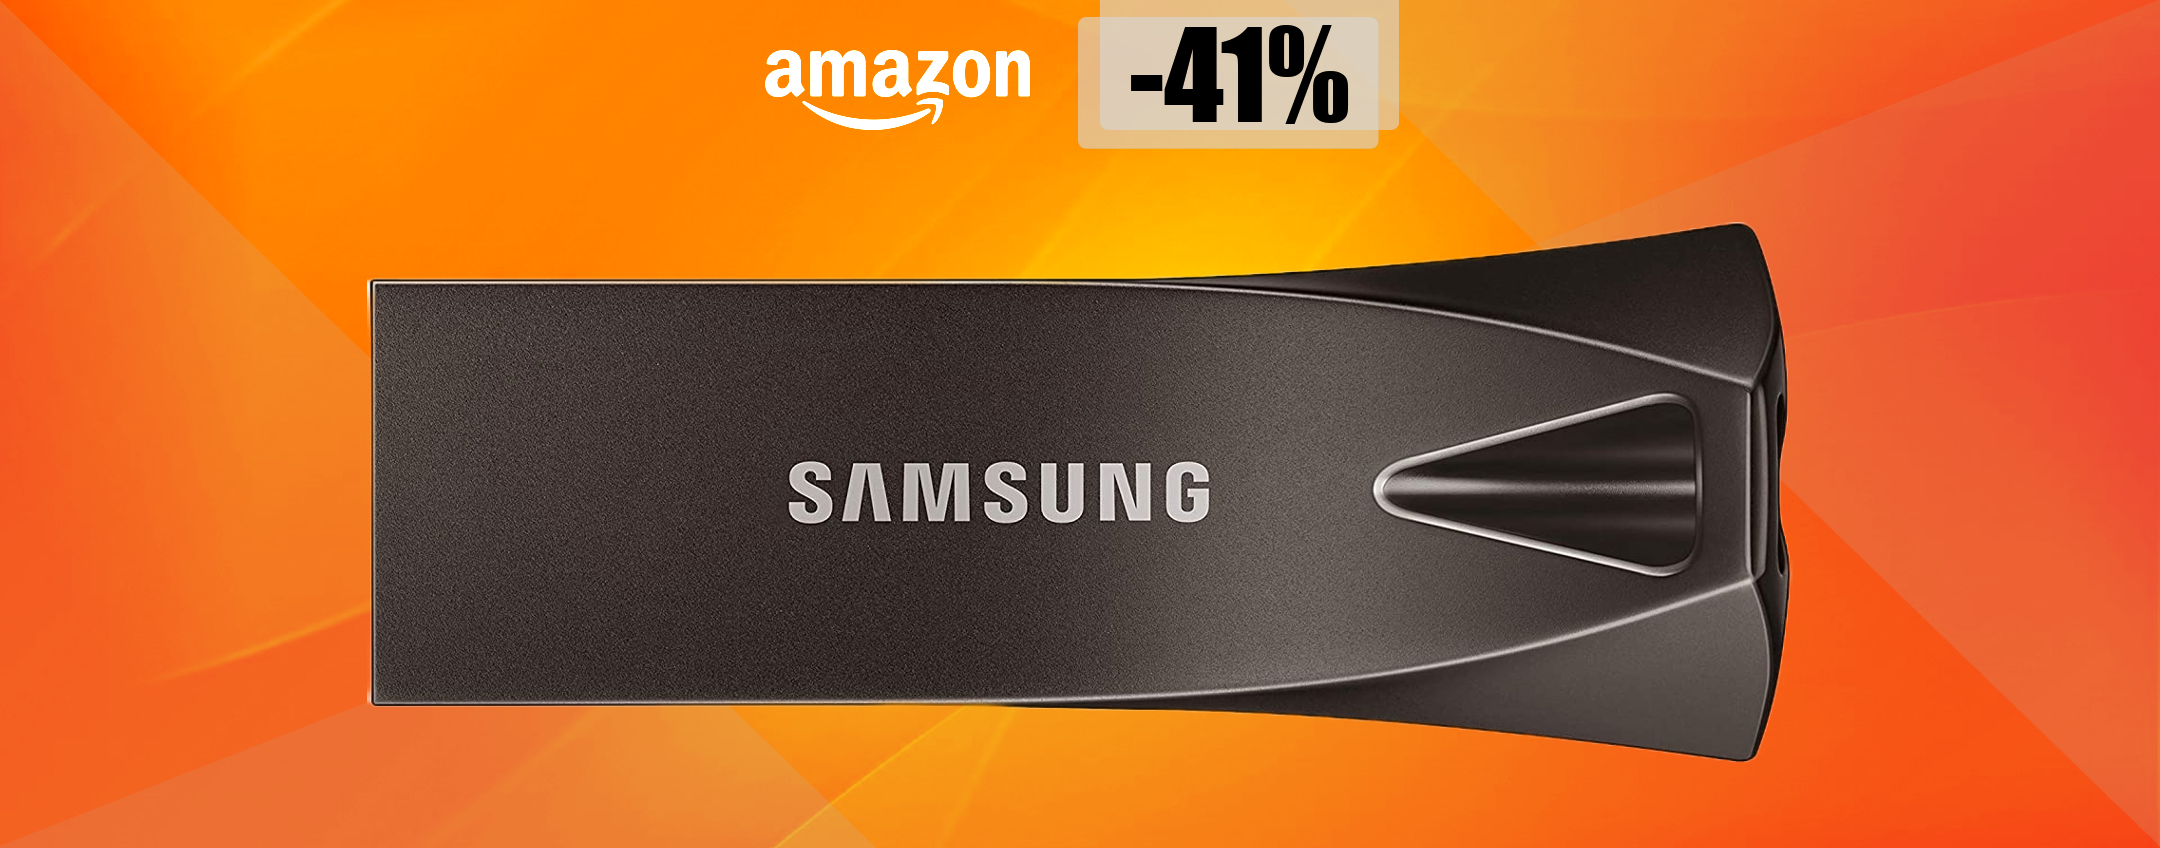 Chiavetta USB 64GB Samsung: il MEGLIO che puoi trovare a soli 15€